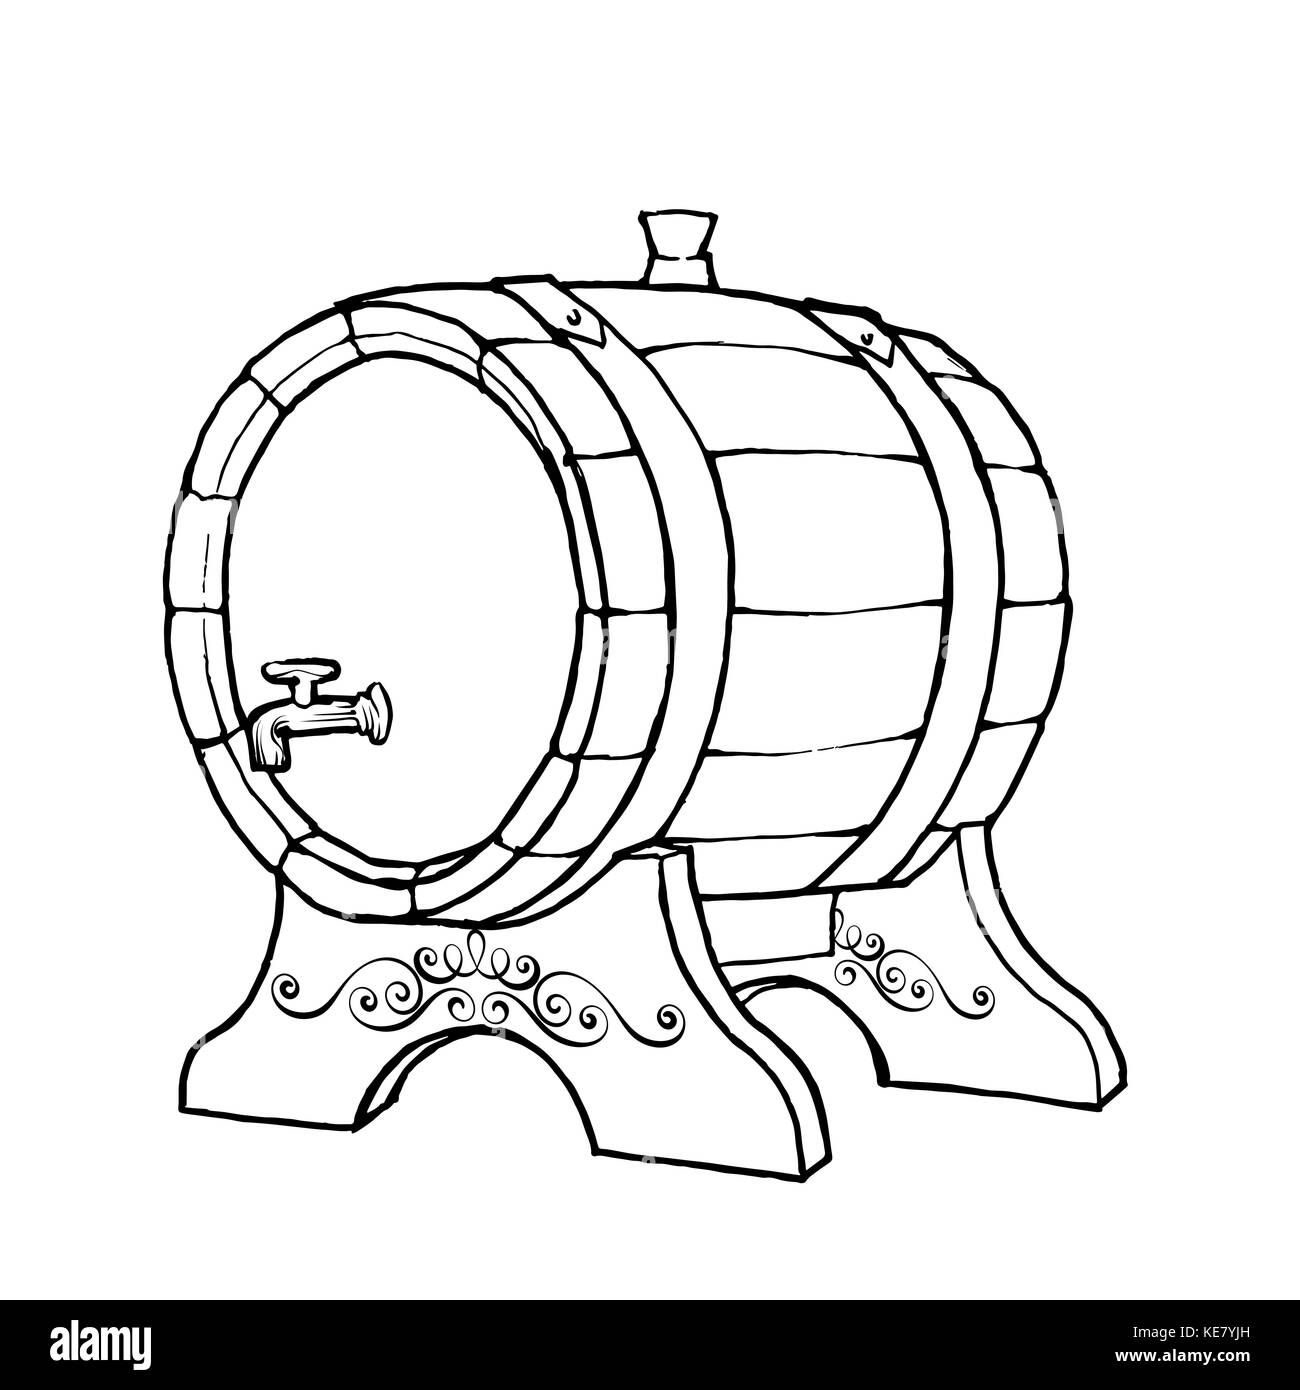 Vektor Skizze Abbildung eines hölzernen Weinfass mit dem Wasserhahn im  Vintage Style mit Ständer. Handgezeichnete kilderkin Logo  Stock-Vektorgrafik - Alamy